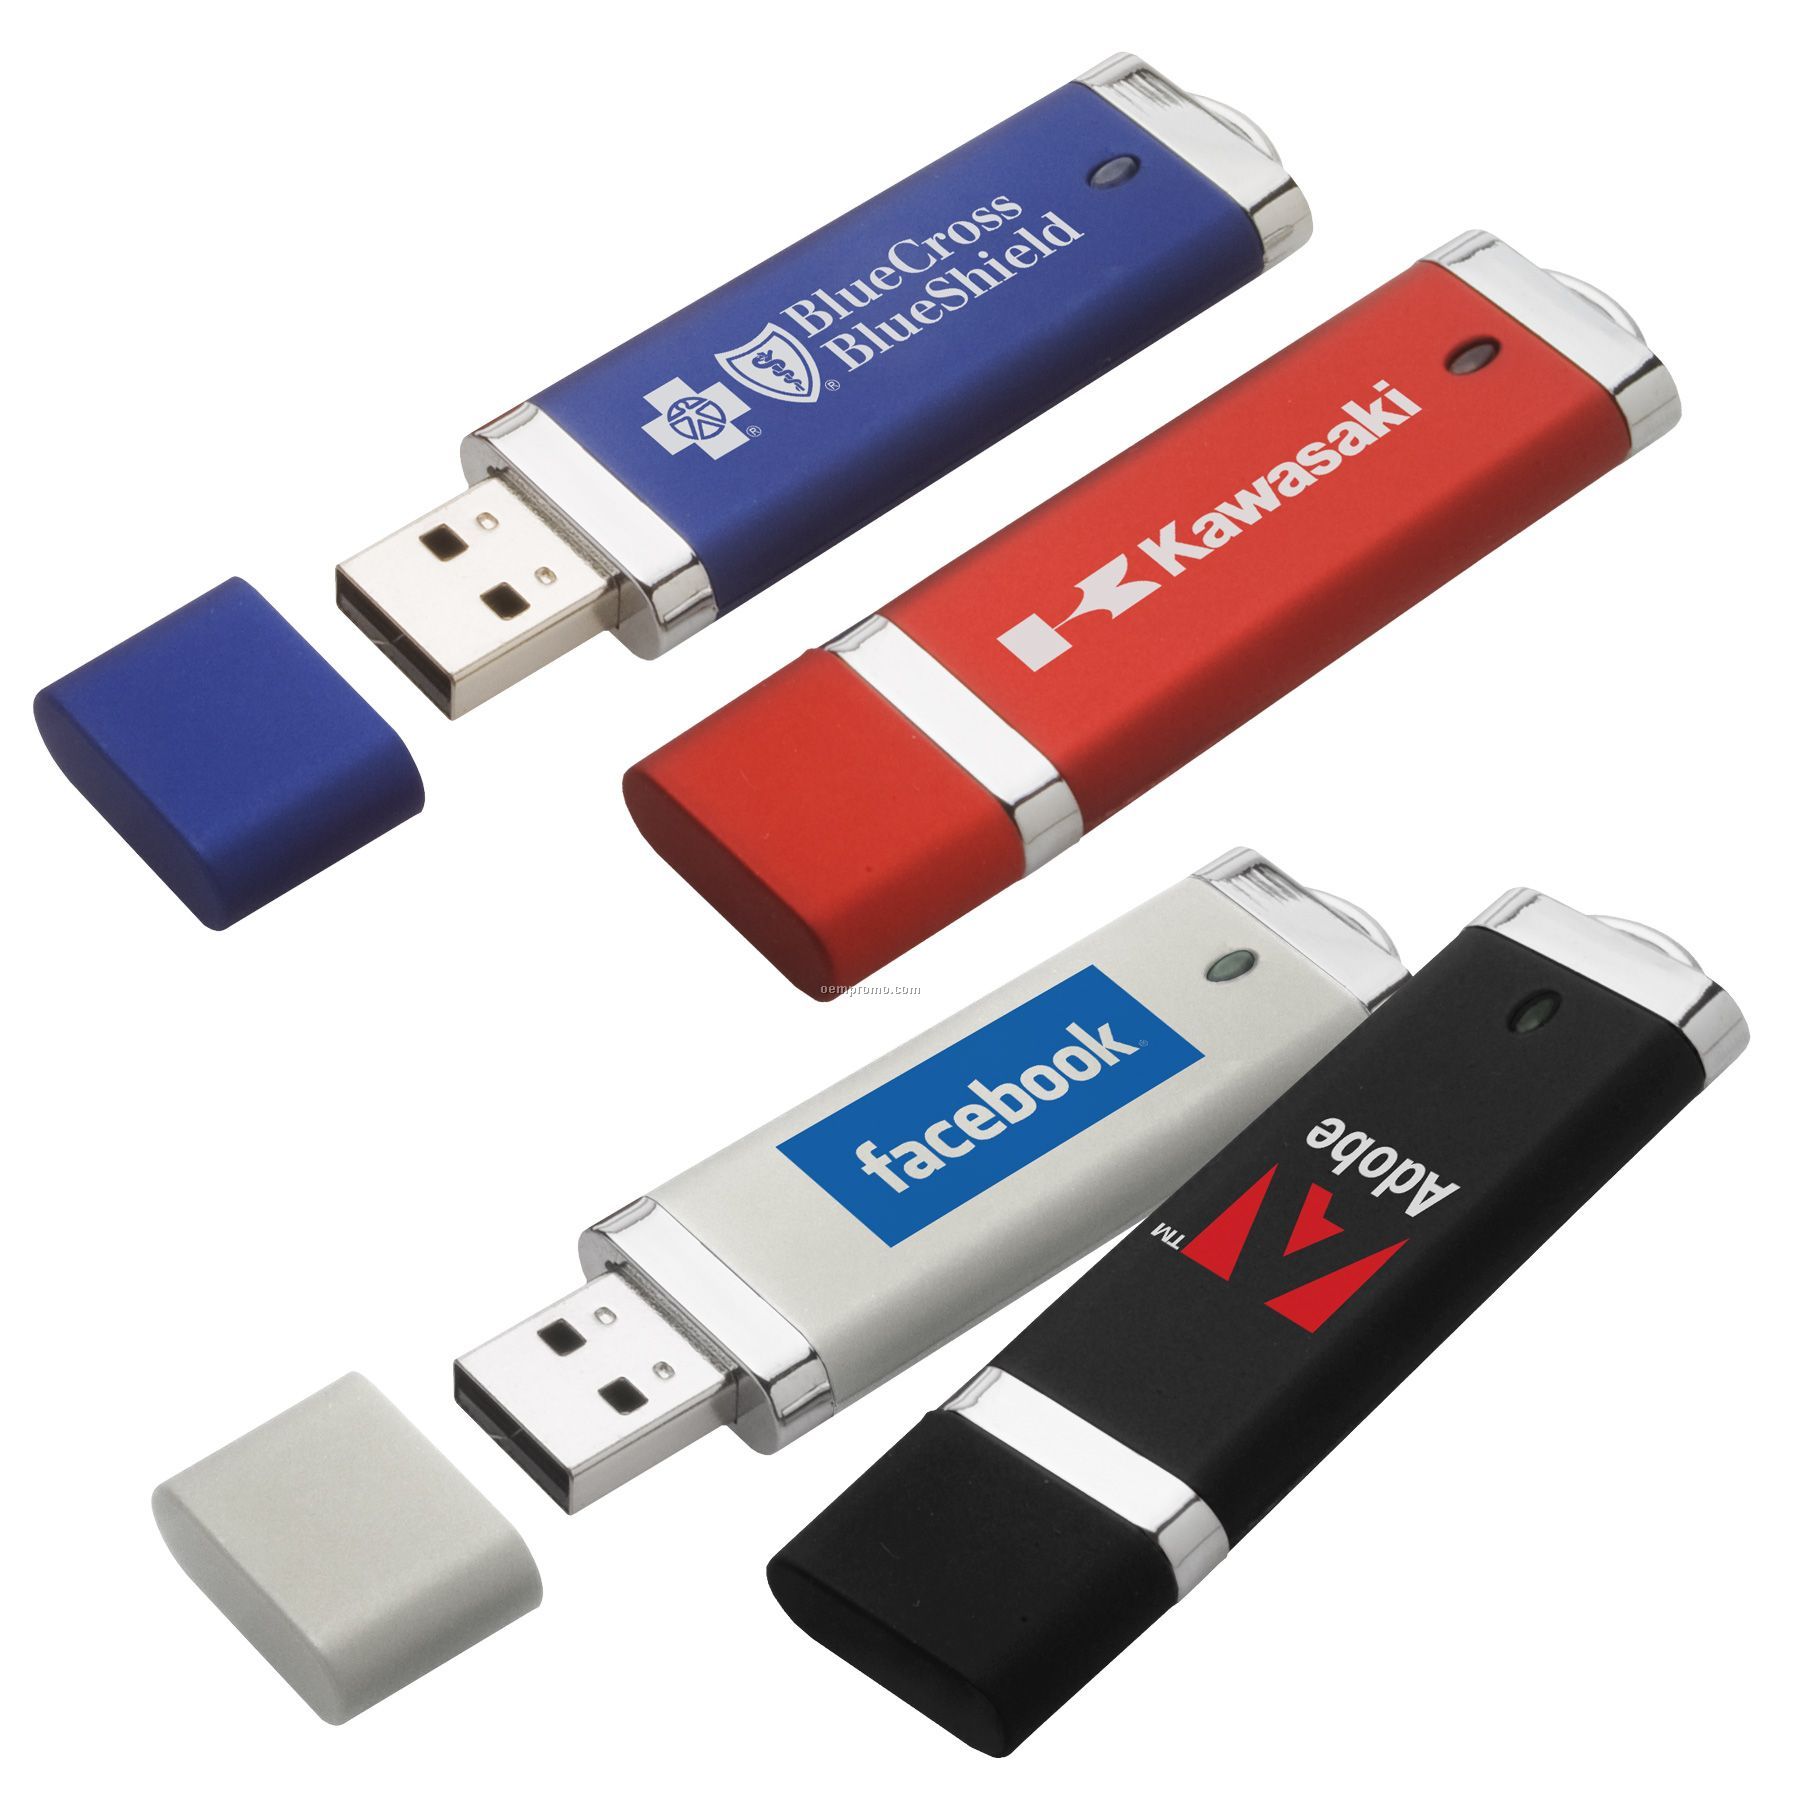 Anzi USB Flash Drive (256mb)